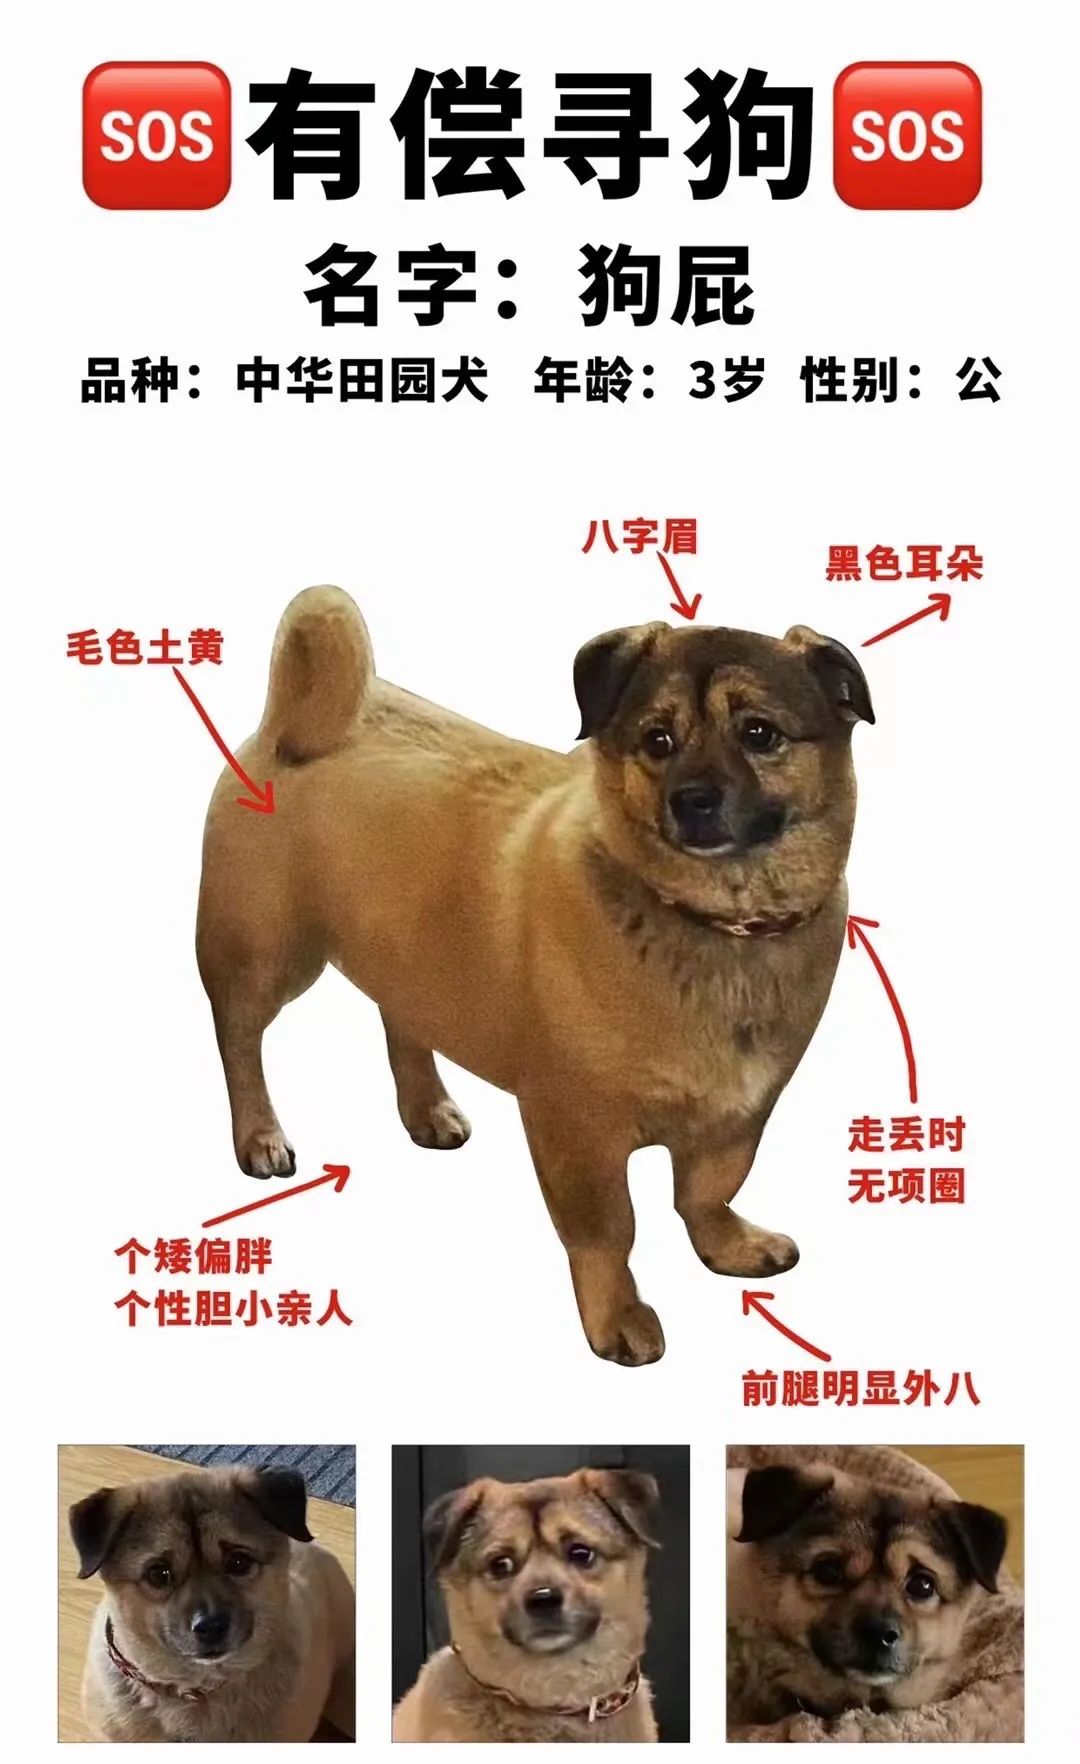 太治愈了：半个上海在找的“被闪送送丢的狗狗”回家了